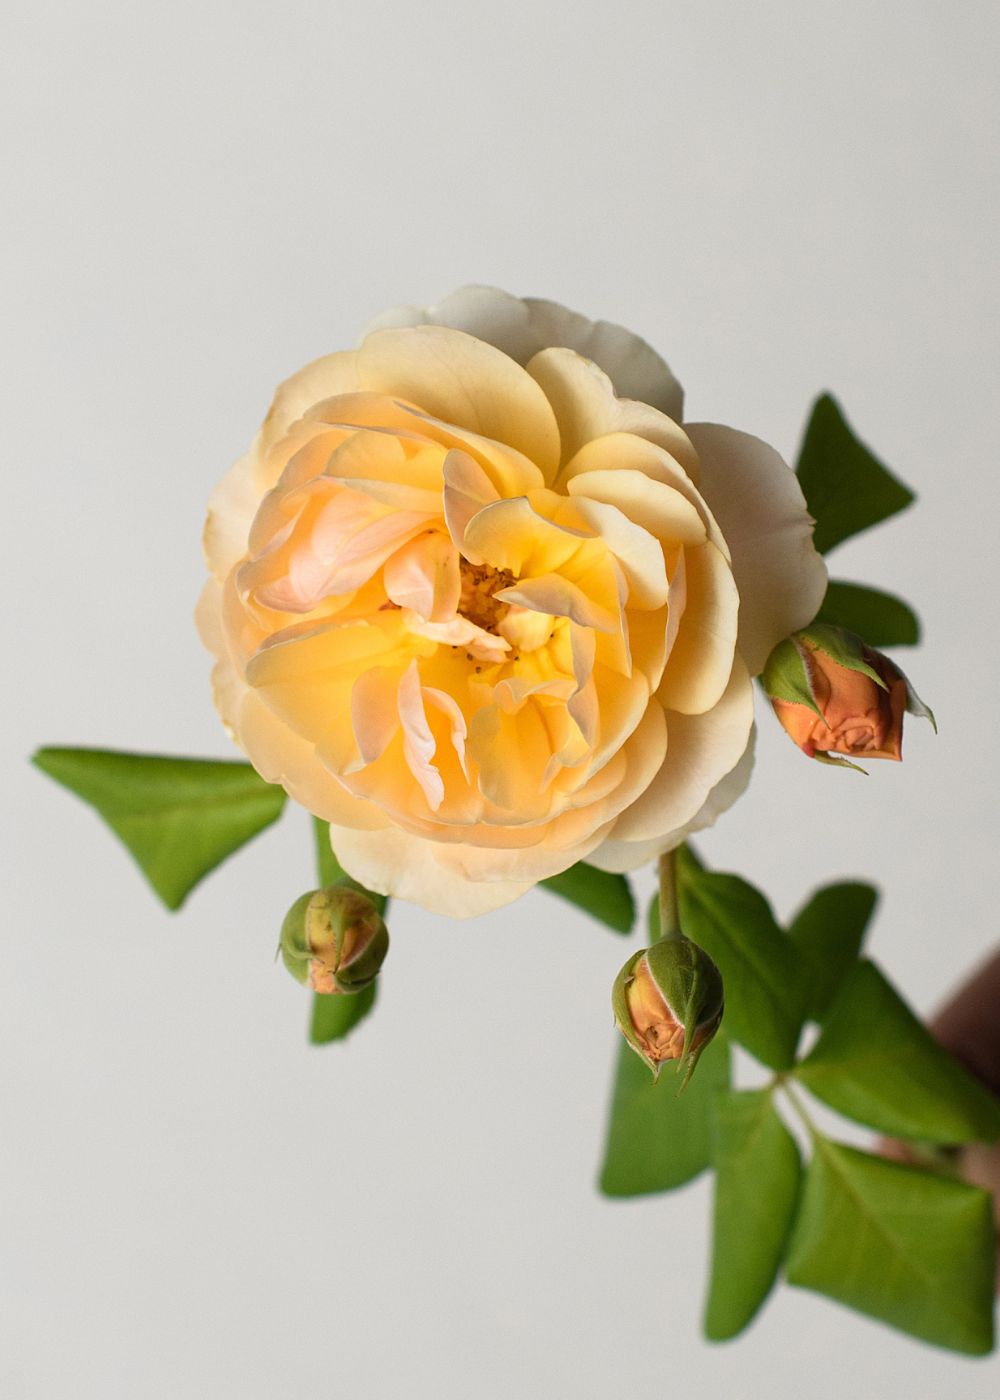 Roald Dahl Rose Bare Root - Menagerie Farm & Flower